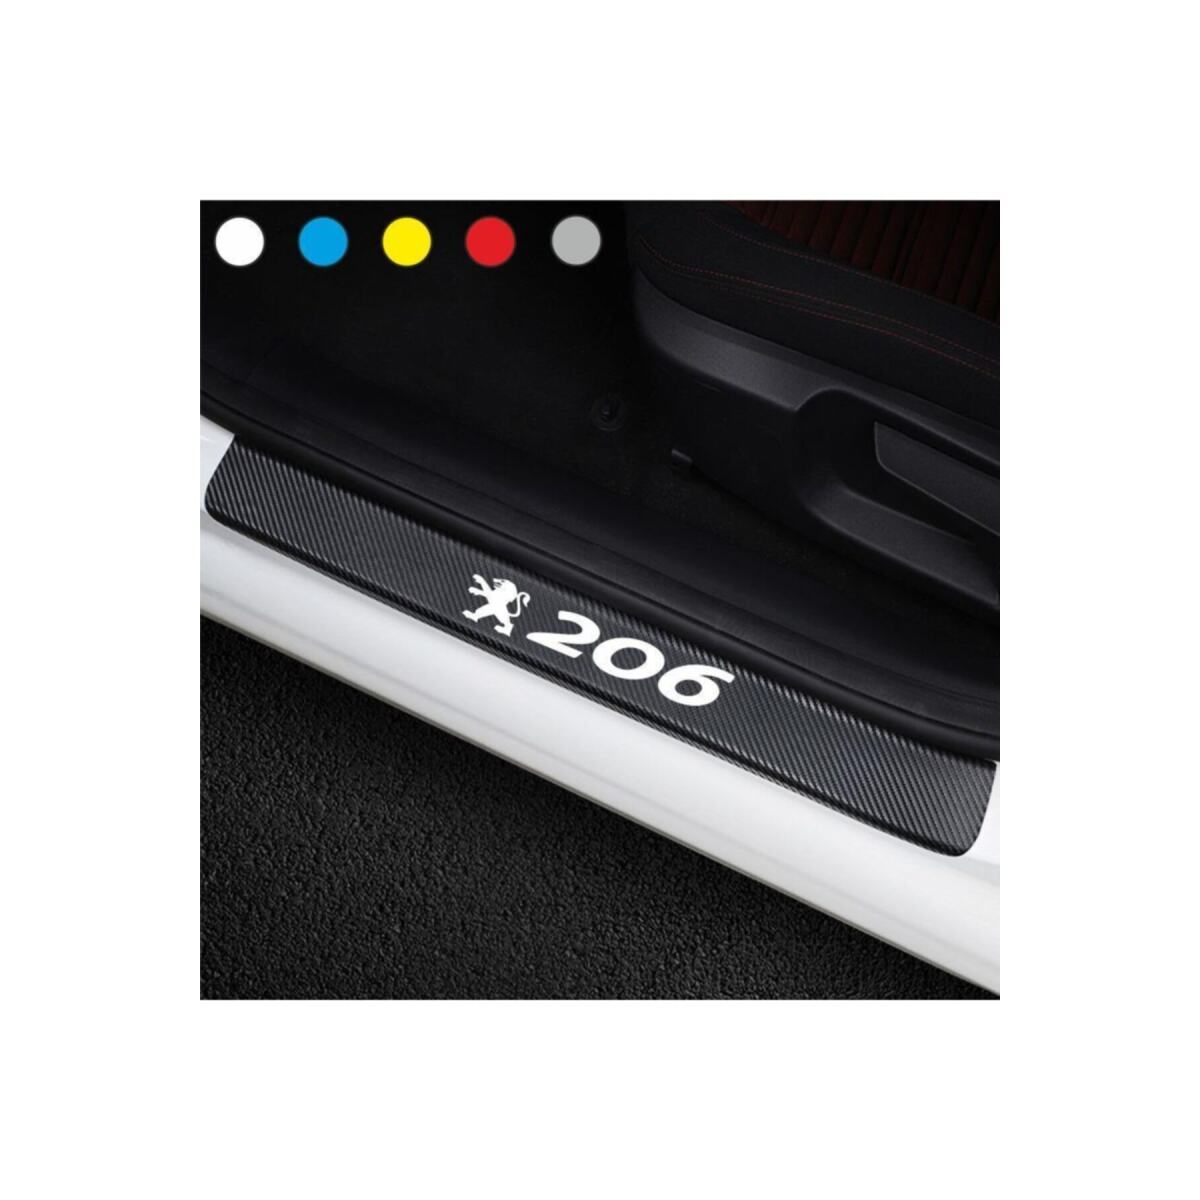 Peugeot 206 İçin Yeni Uyumlu Aksesuar Oto Kapı Eşiği Sticker Karbon 4 Adet